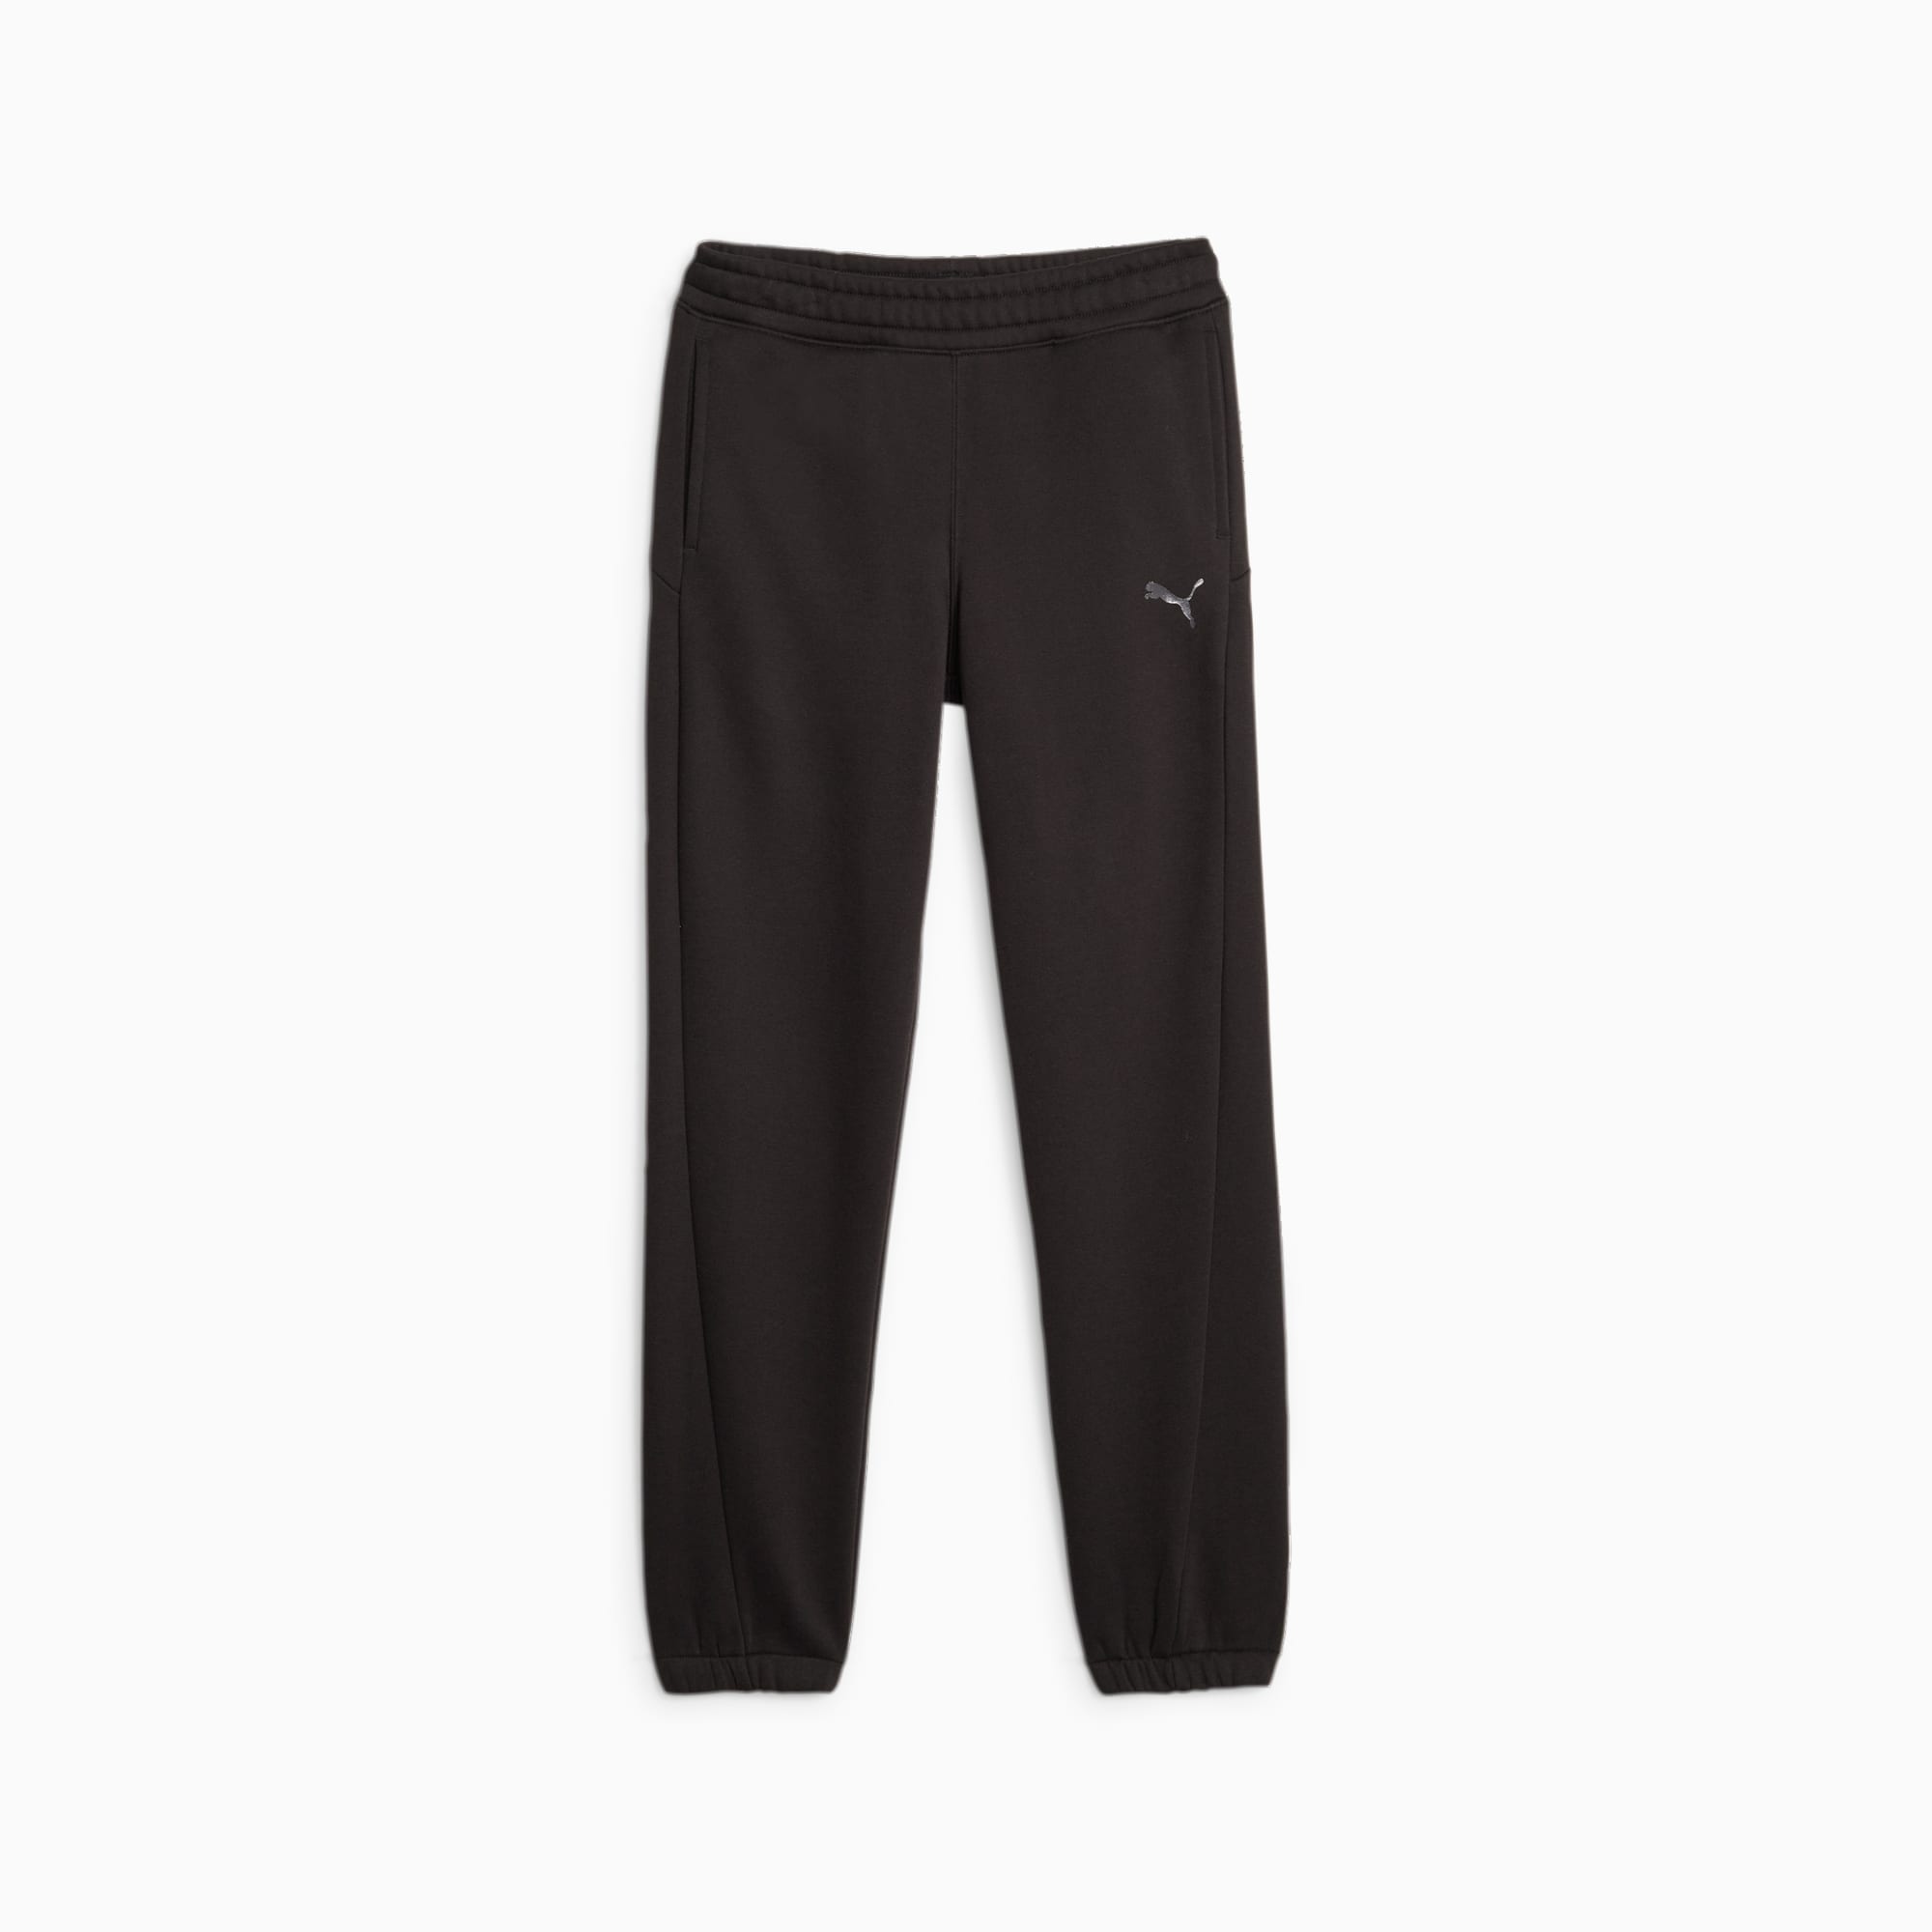 PUMA Motion Youth Sweatpants, Black, Size 128, Clothing